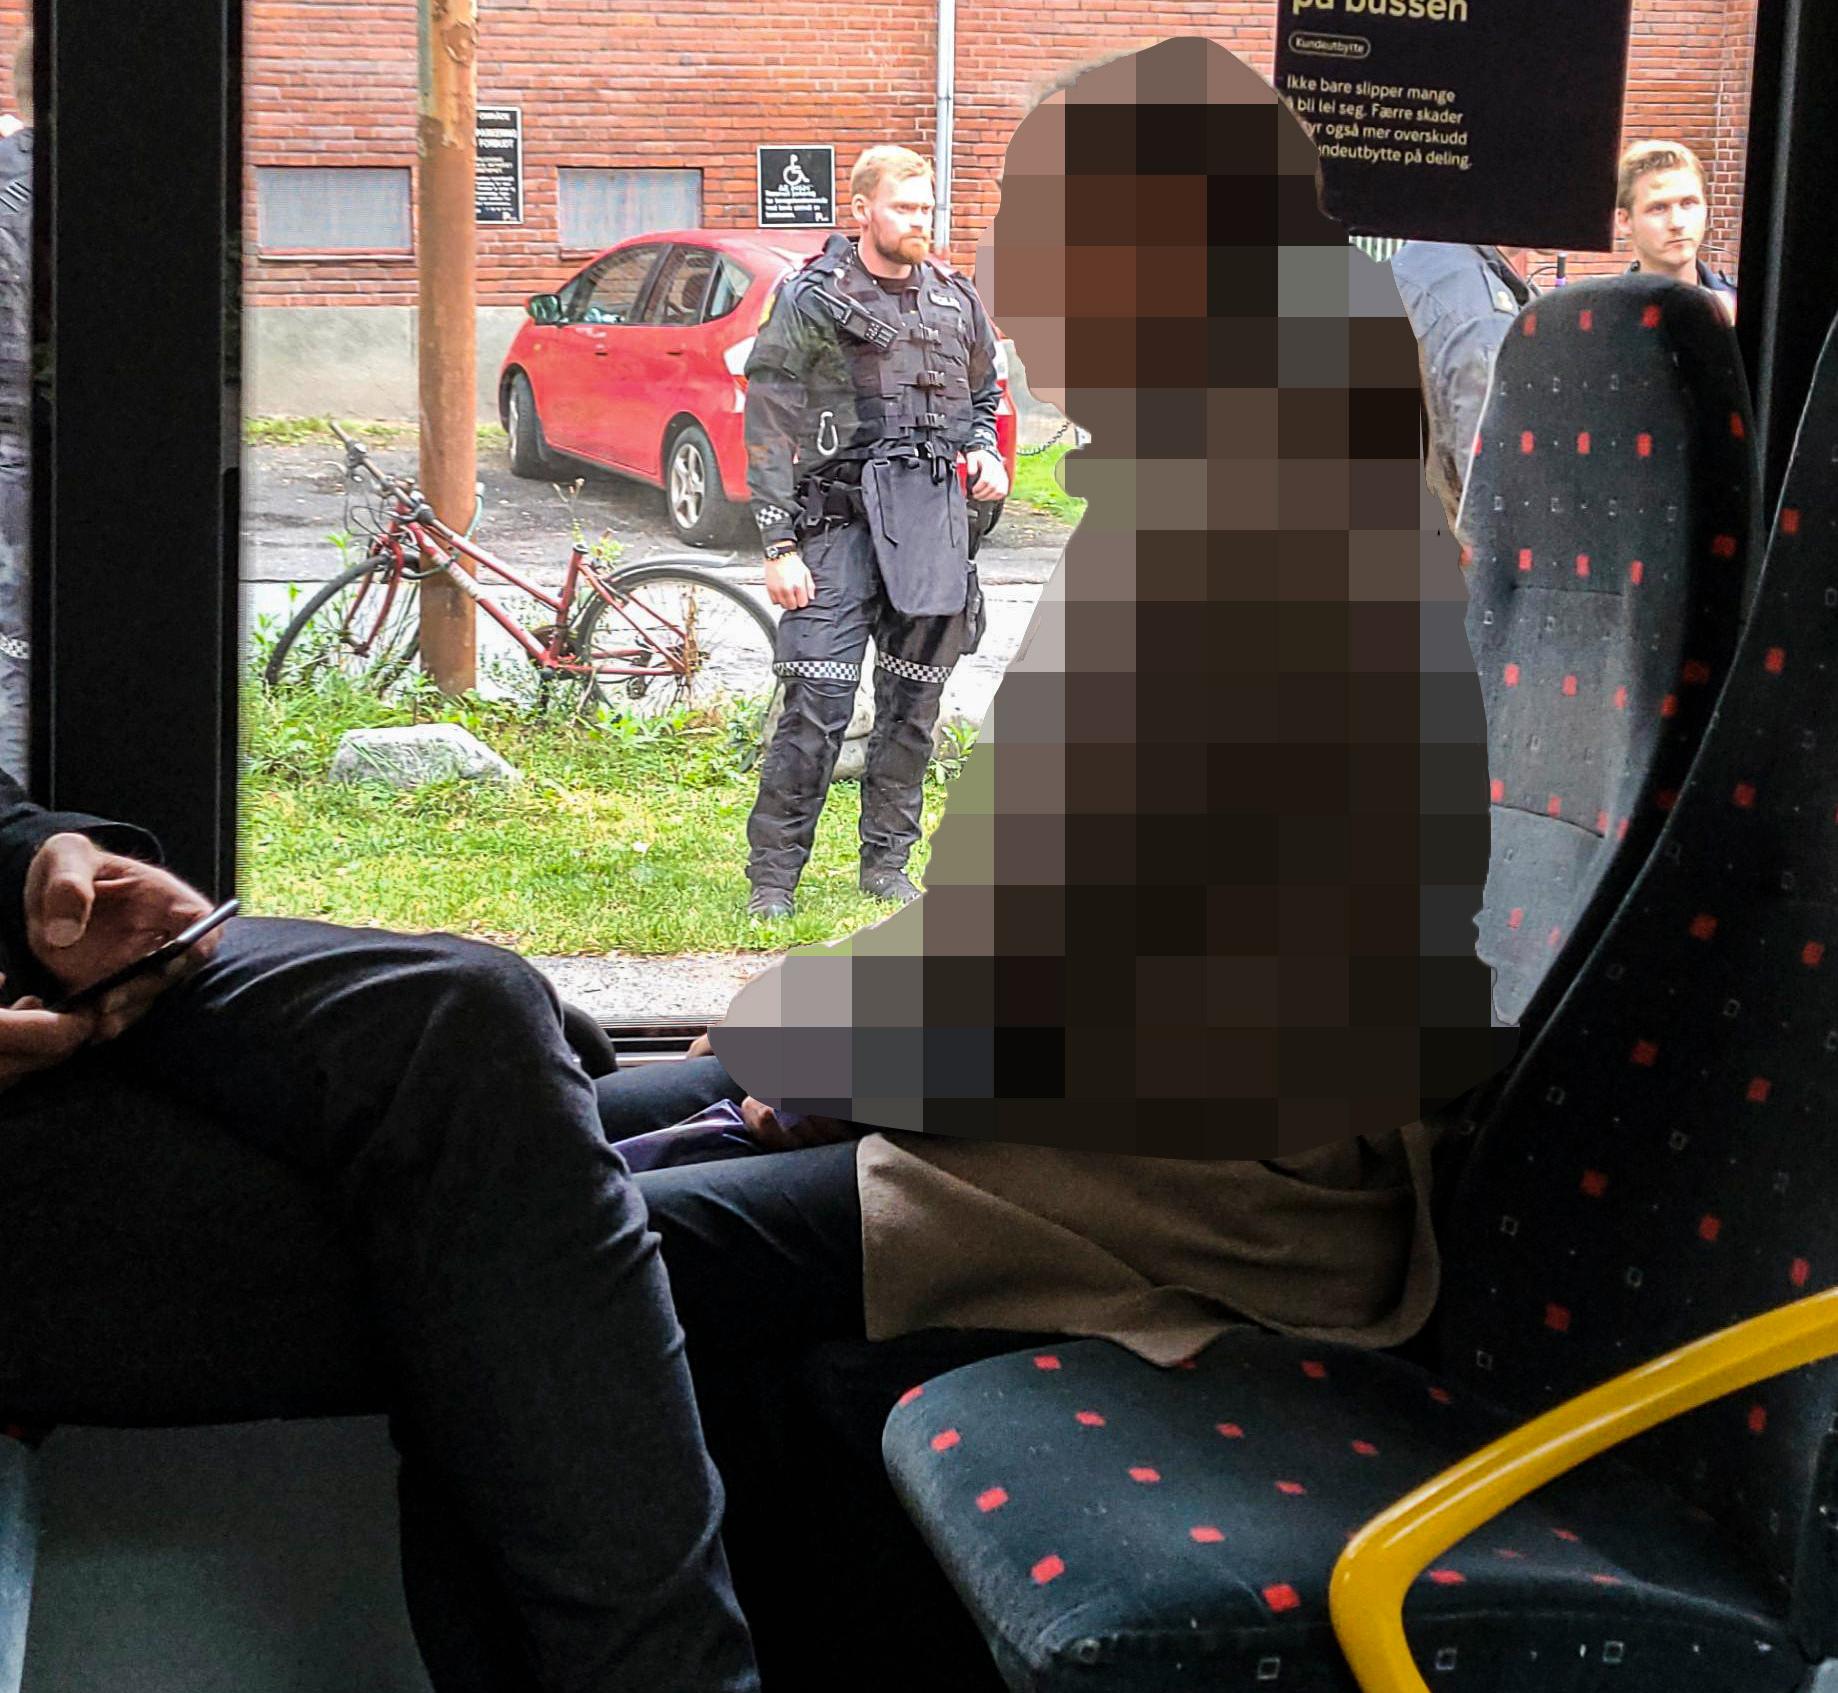 Homme avec une arme pris dans un bus à Oslo – VG